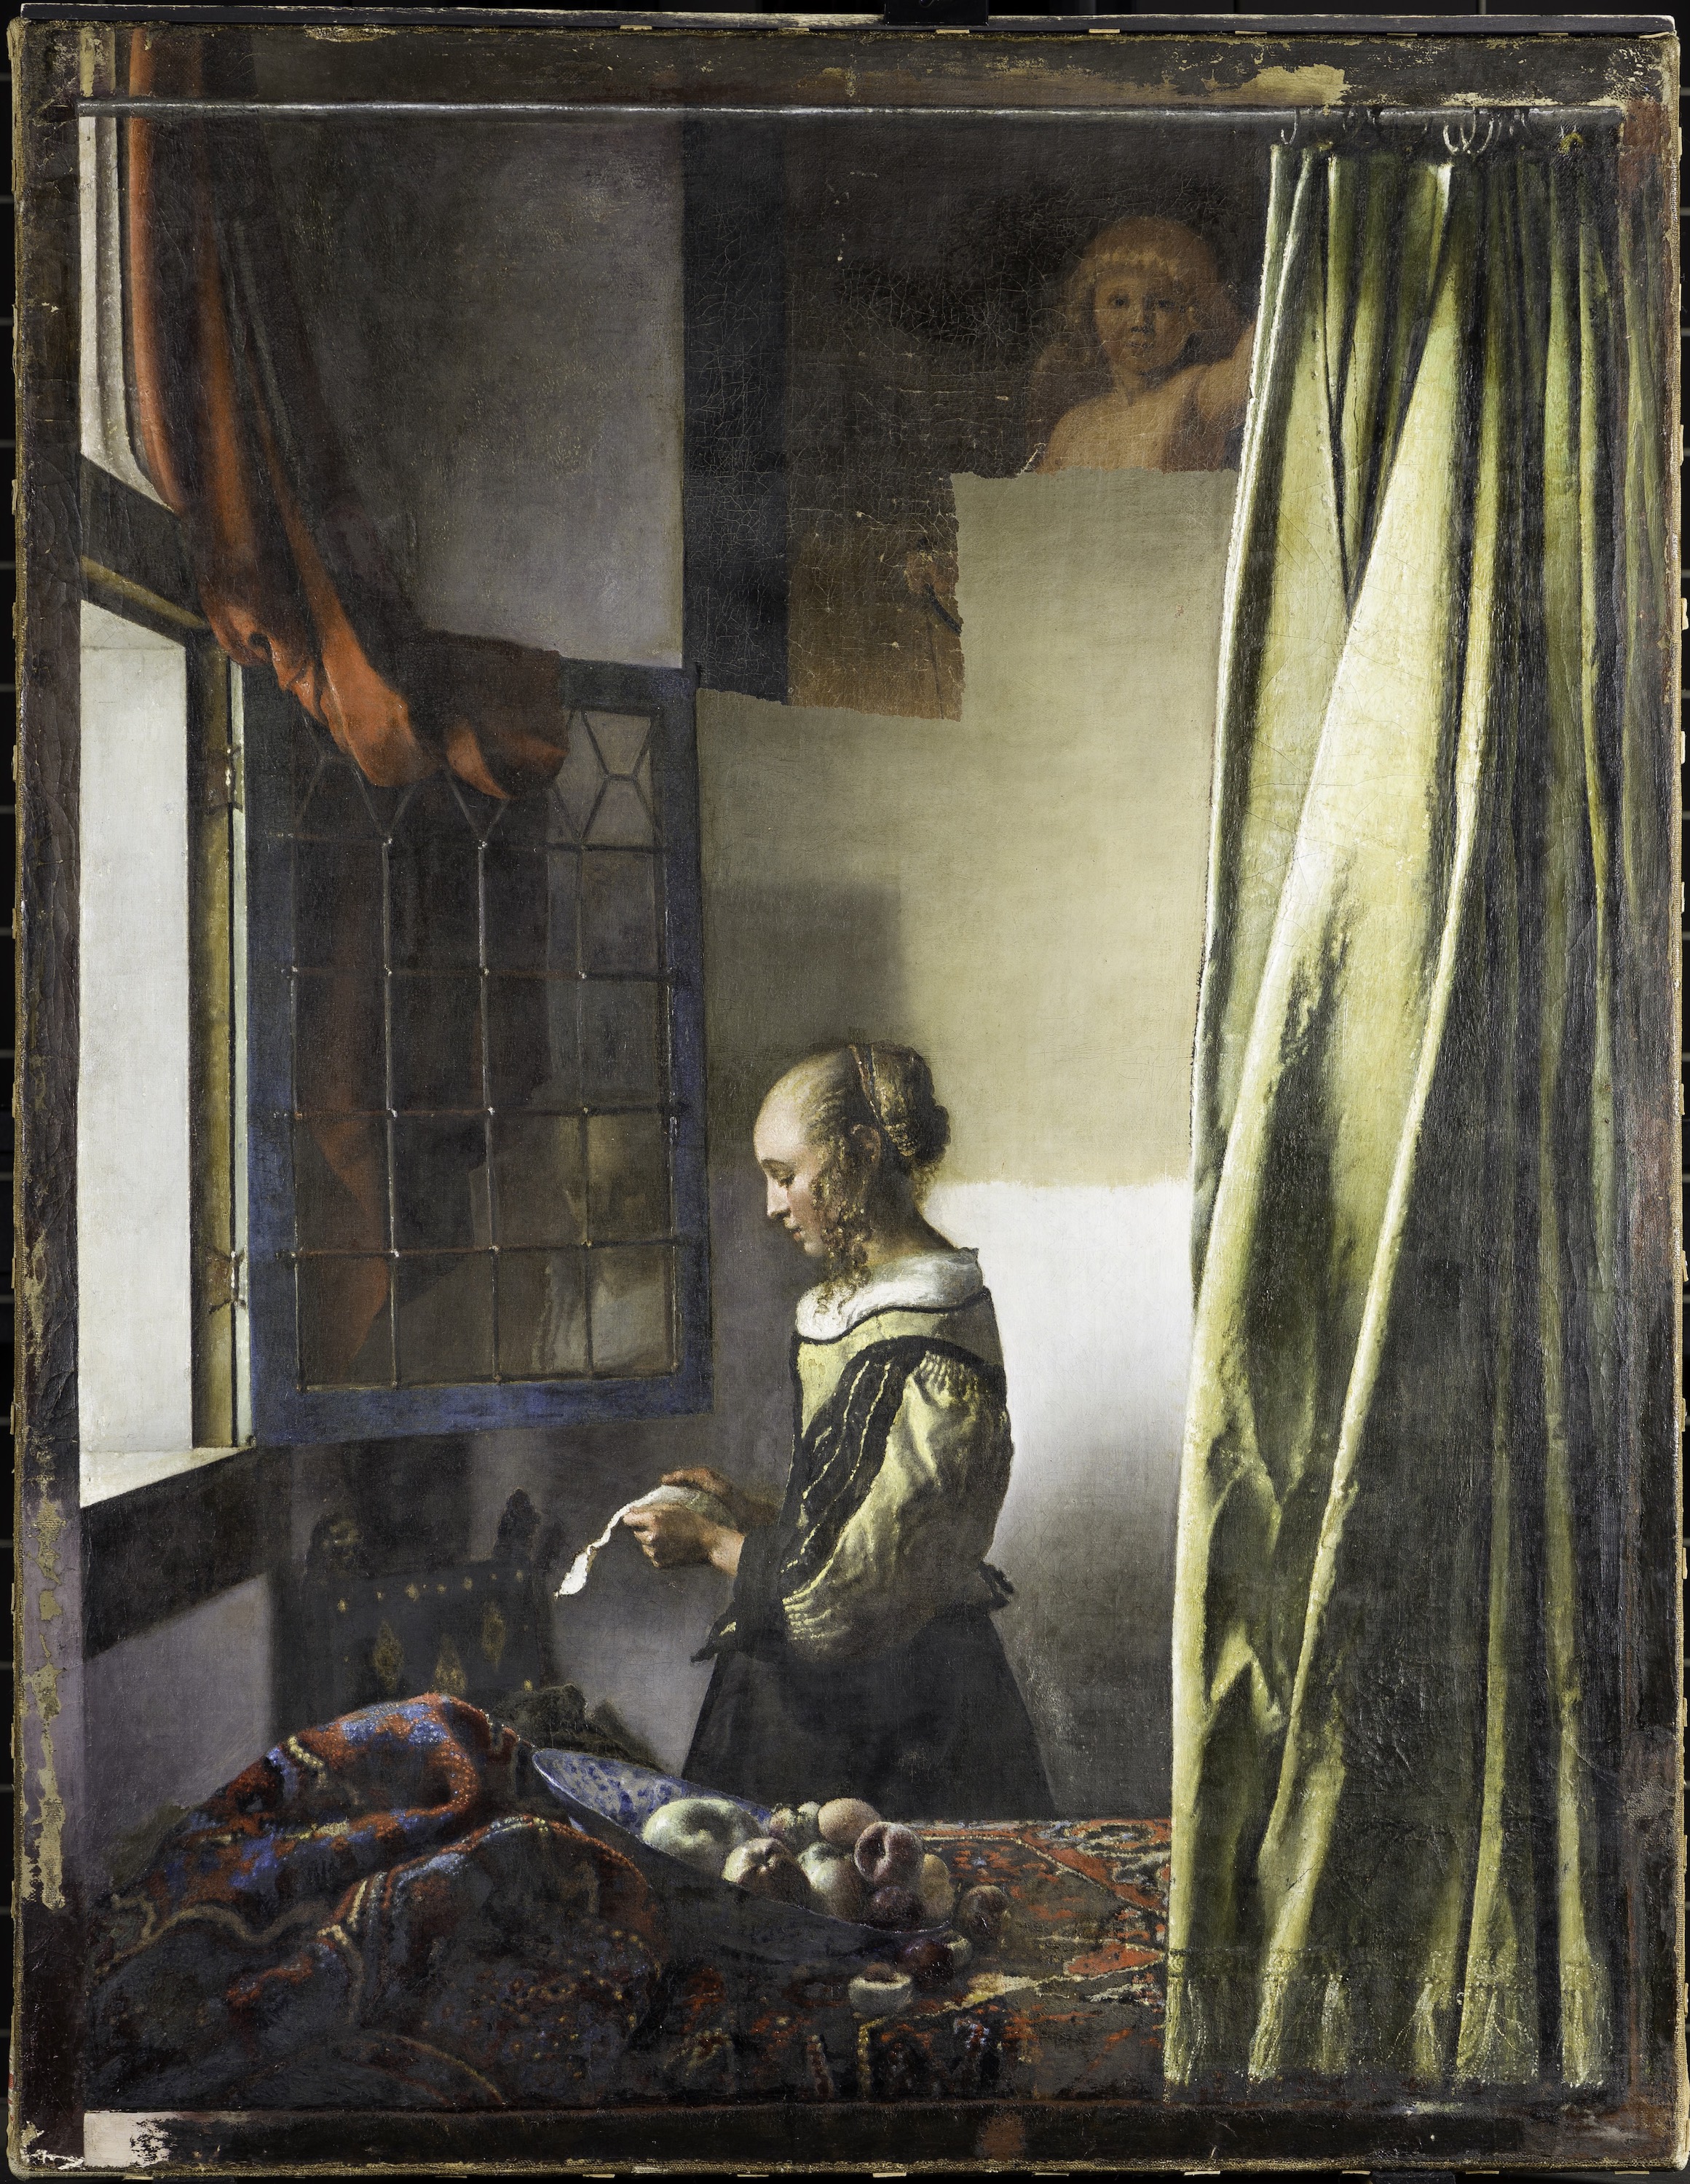 Ragazza che legge una lettera accanto ad una finestra aperta by Johannes Vermeer - 1657-59 circa - 83 x 64,5 cm 